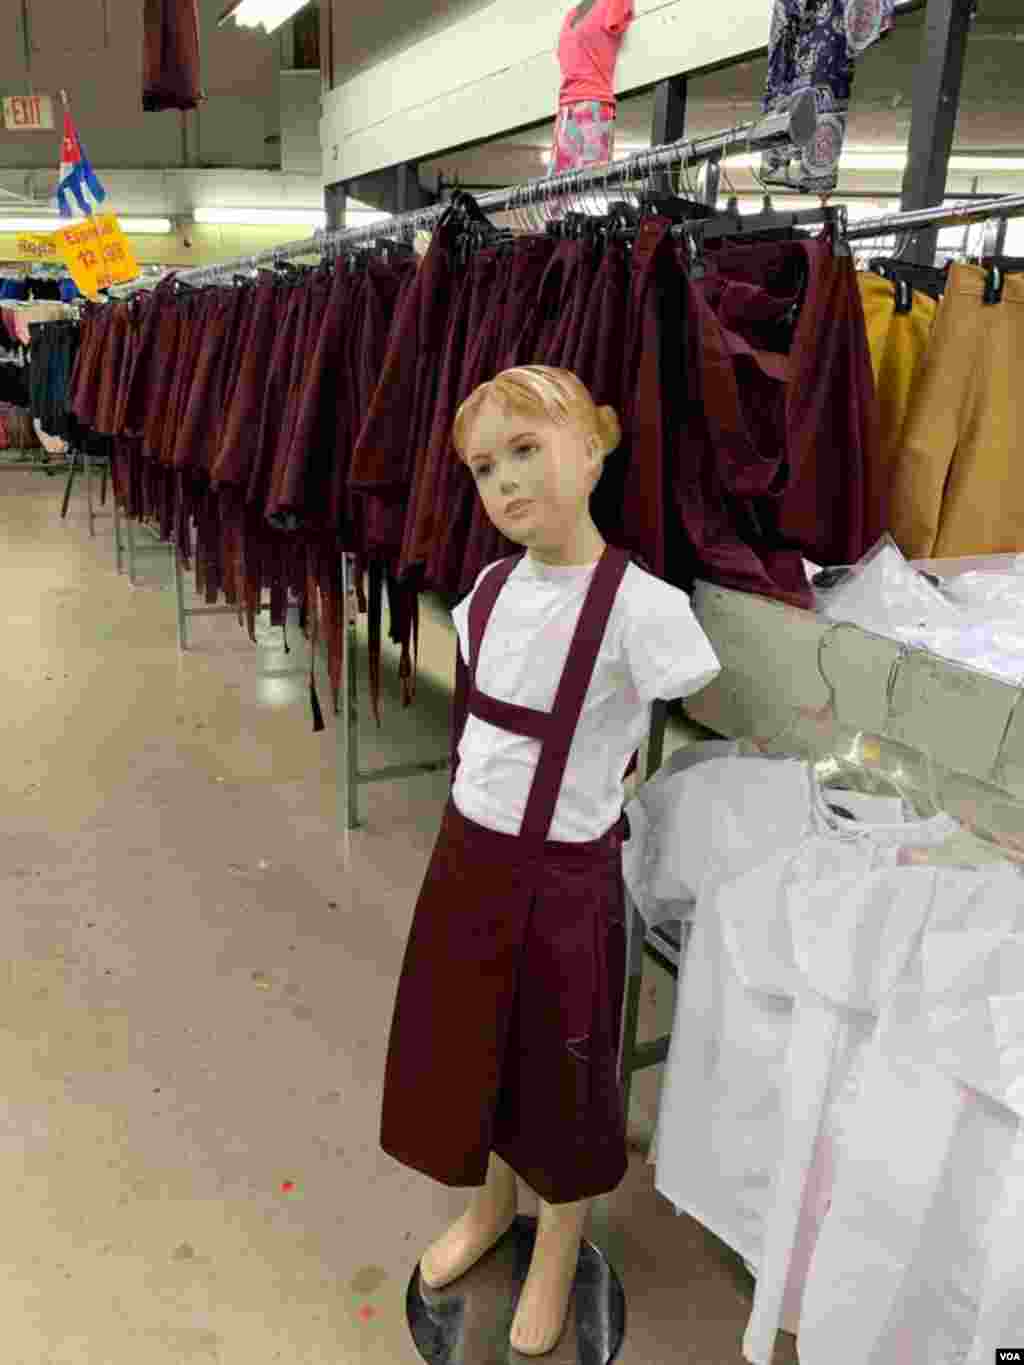 La venta de uniformes que usan los escolares en Cuba es quizás una de las mayores rarezas de esta tienda ubicada en Hialeah, la ciudad de EE.UU. donde vive el mayor número de cubanos exiliados.